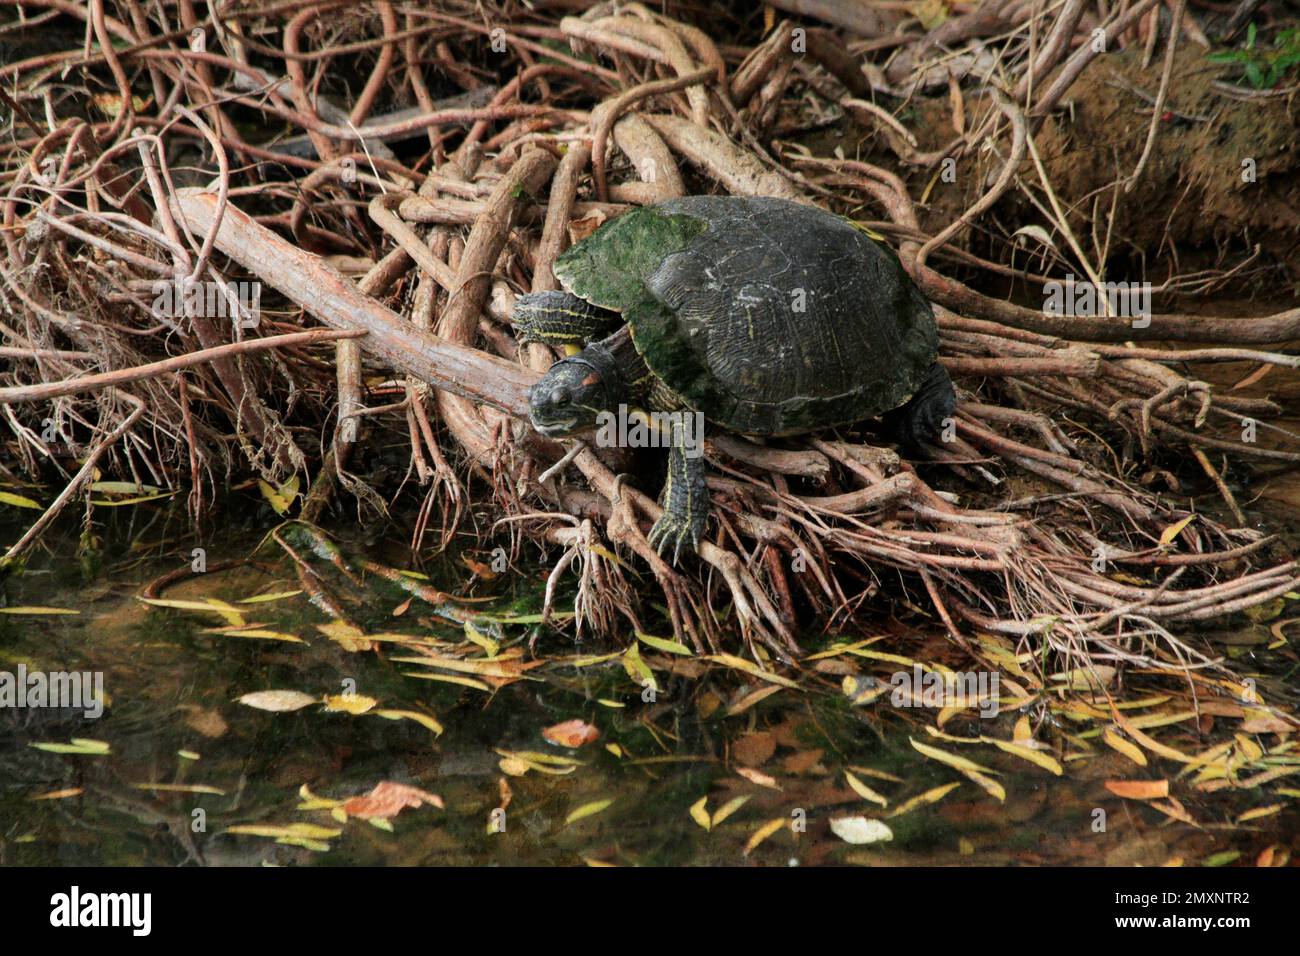 Un gros plan d'une tortue verte (Testudines) assise sur les racines des arbres au bord d'un étang Banque D'Images